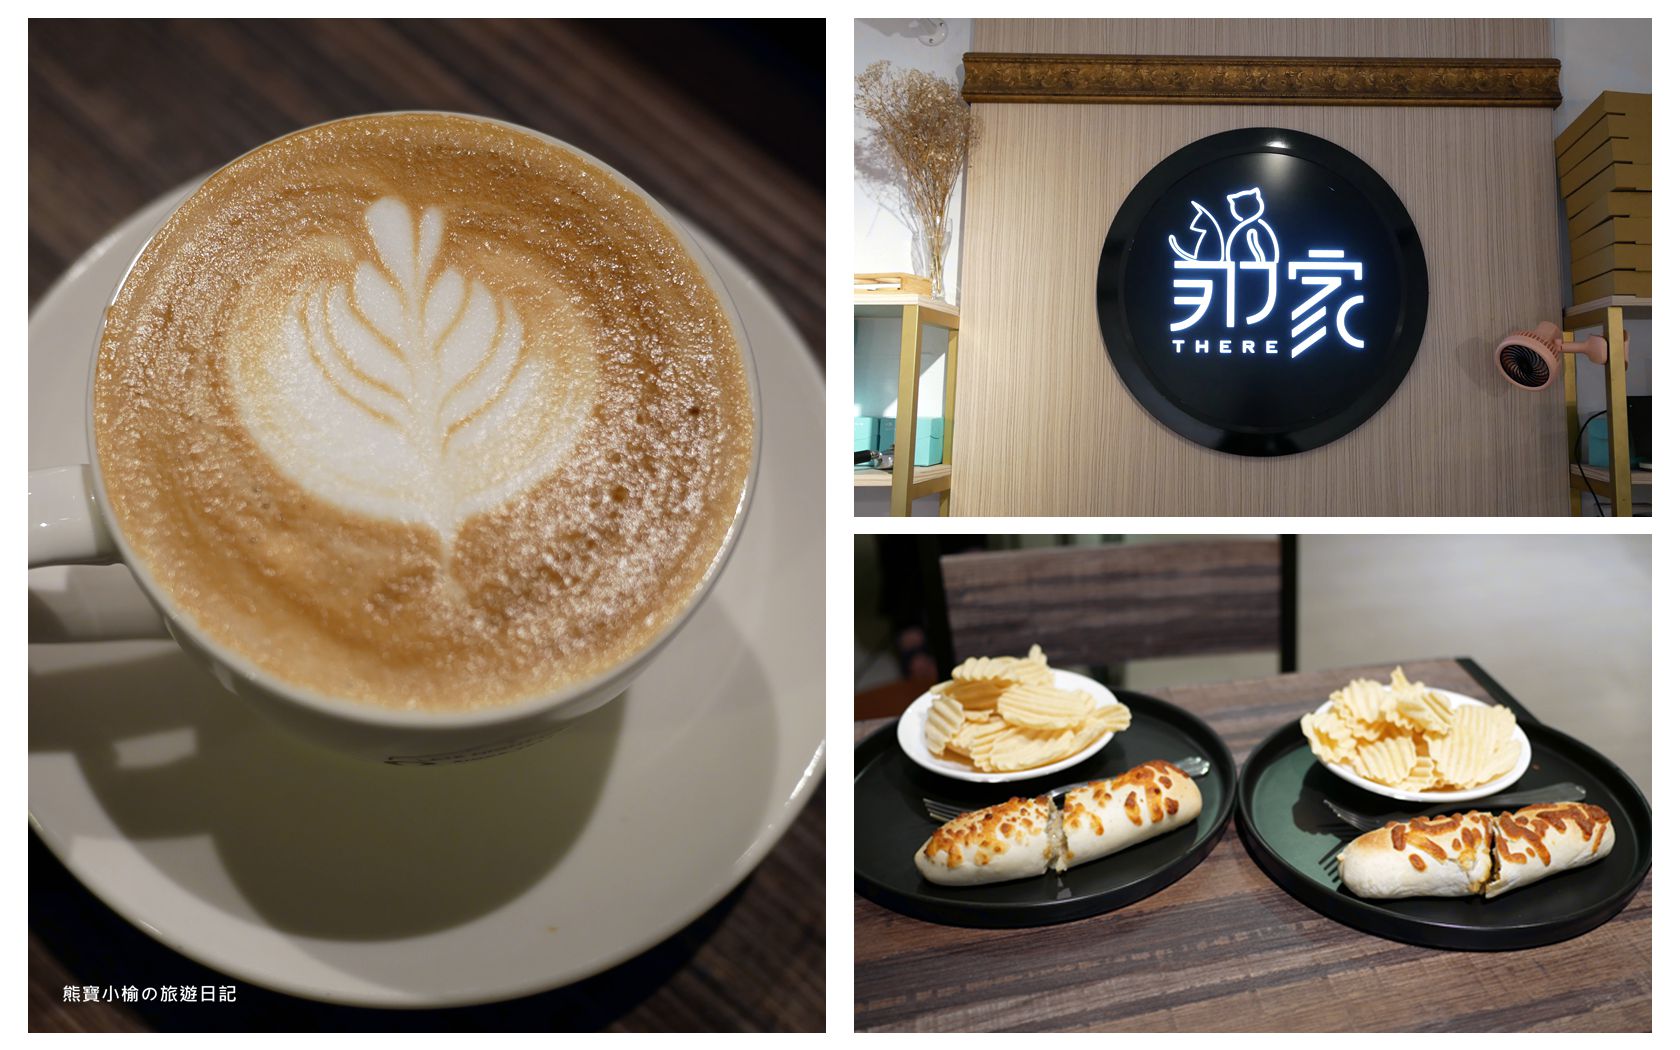 【新竹美食】那家咖啡館新竹深夜咖啡，學生最愛寧靜閱讀辦公咖啡輕食館，有插座有WIFI，內文附詳細菜單價位介紹。